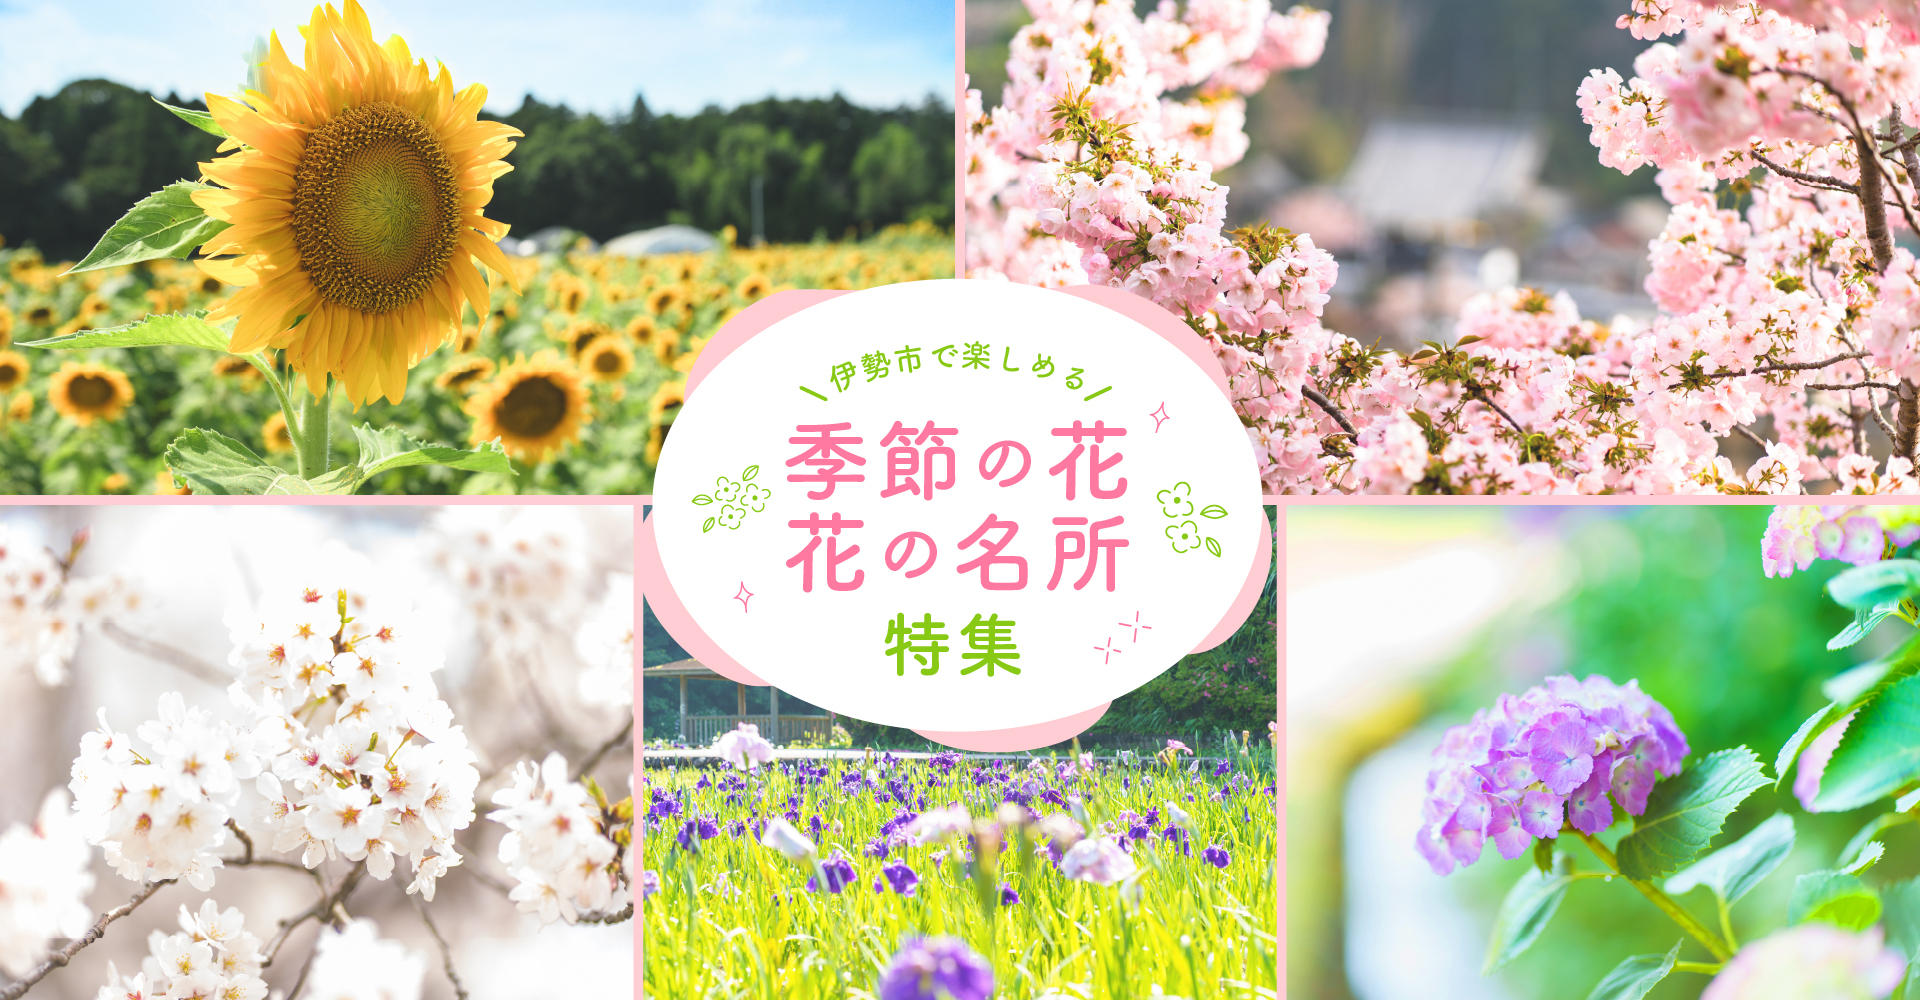 Dossier spécial sur les fleurs de saison et les spots fleuris dont vous pouvez profiter dans la ville d'Ise